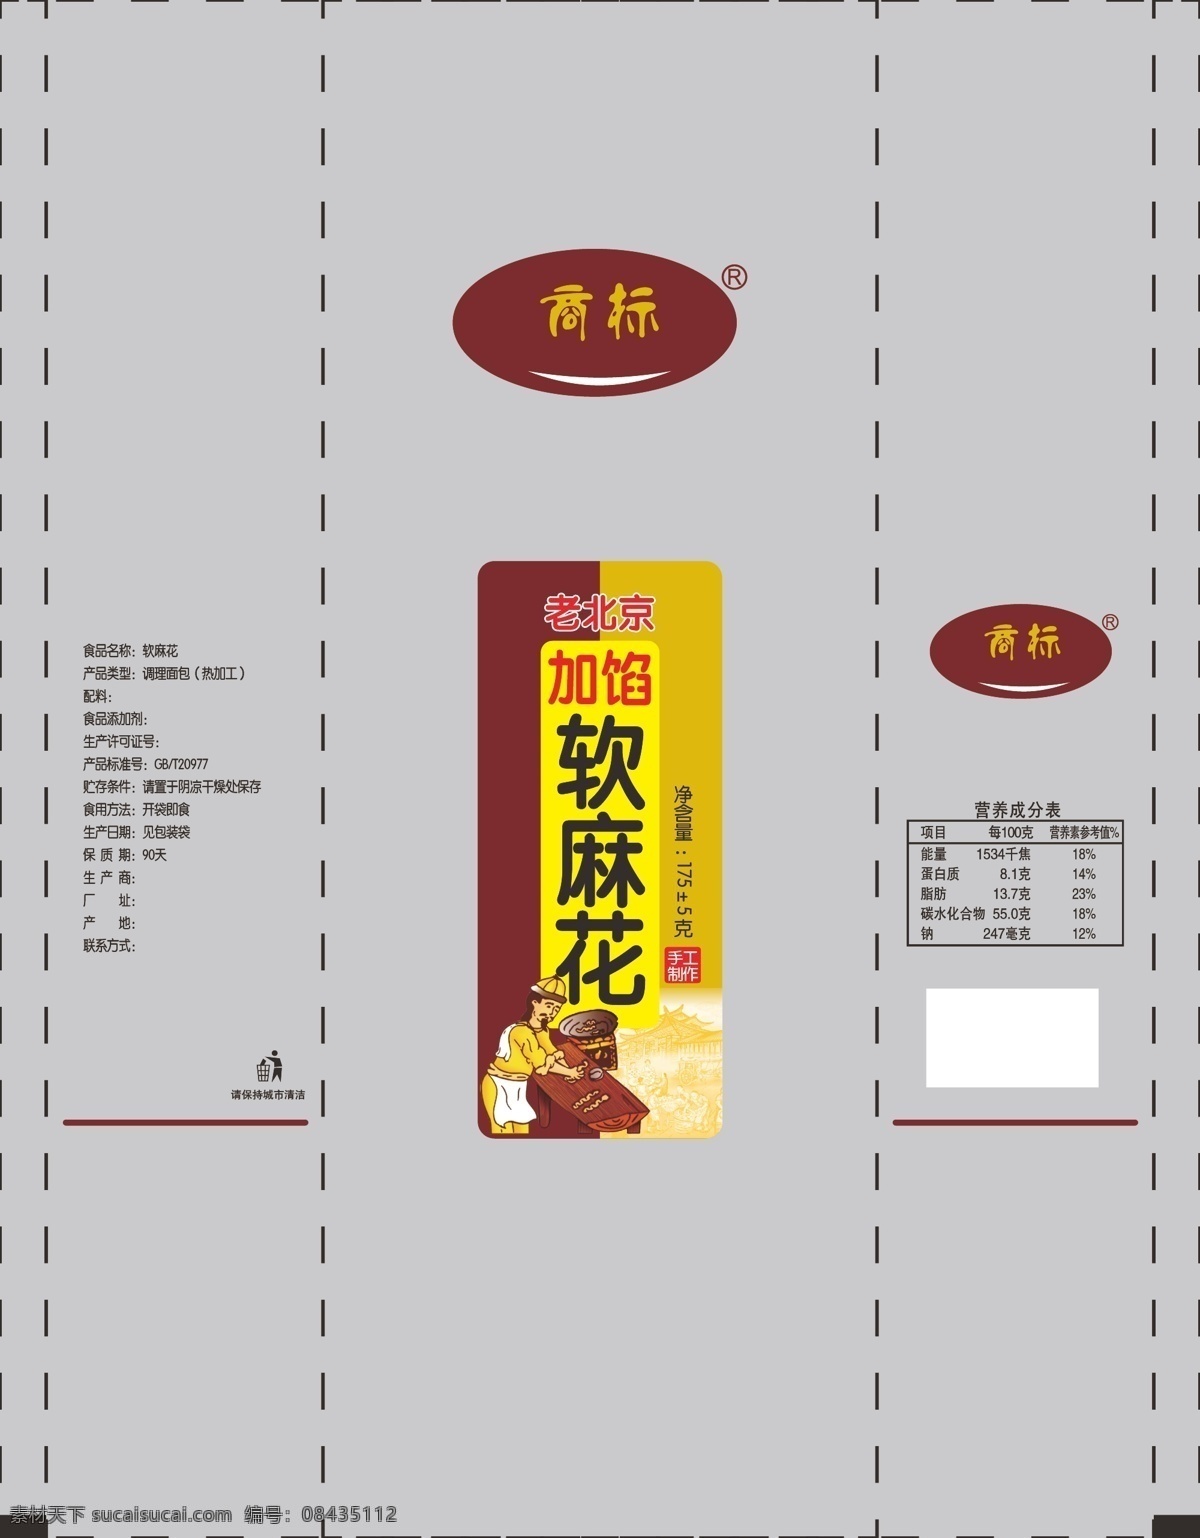 麻花包装 糕点包装 老北京麻花 麻花古图 古代美食街 古代人物图 糕点设计 包装设计